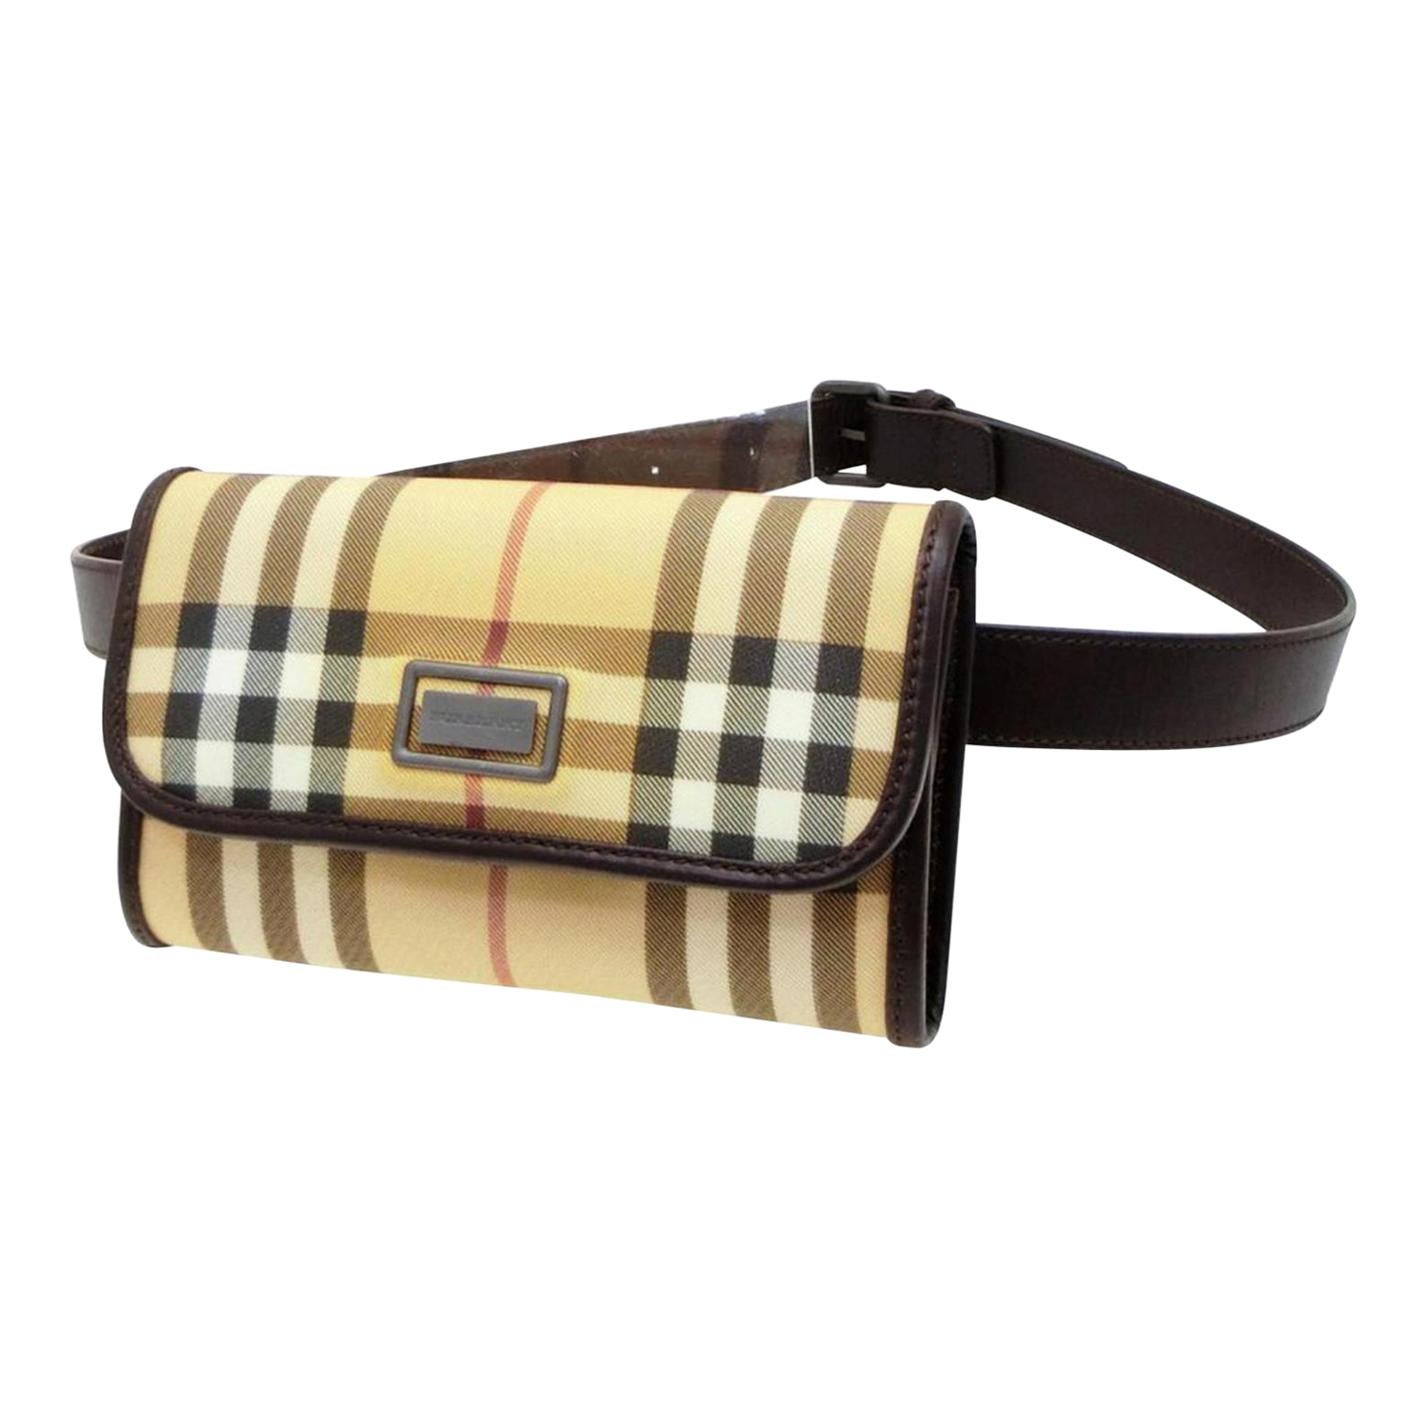 Burberry Nova Check Belt Fanny Pack Waist Pouch 232789 Beige Cross Body Bag